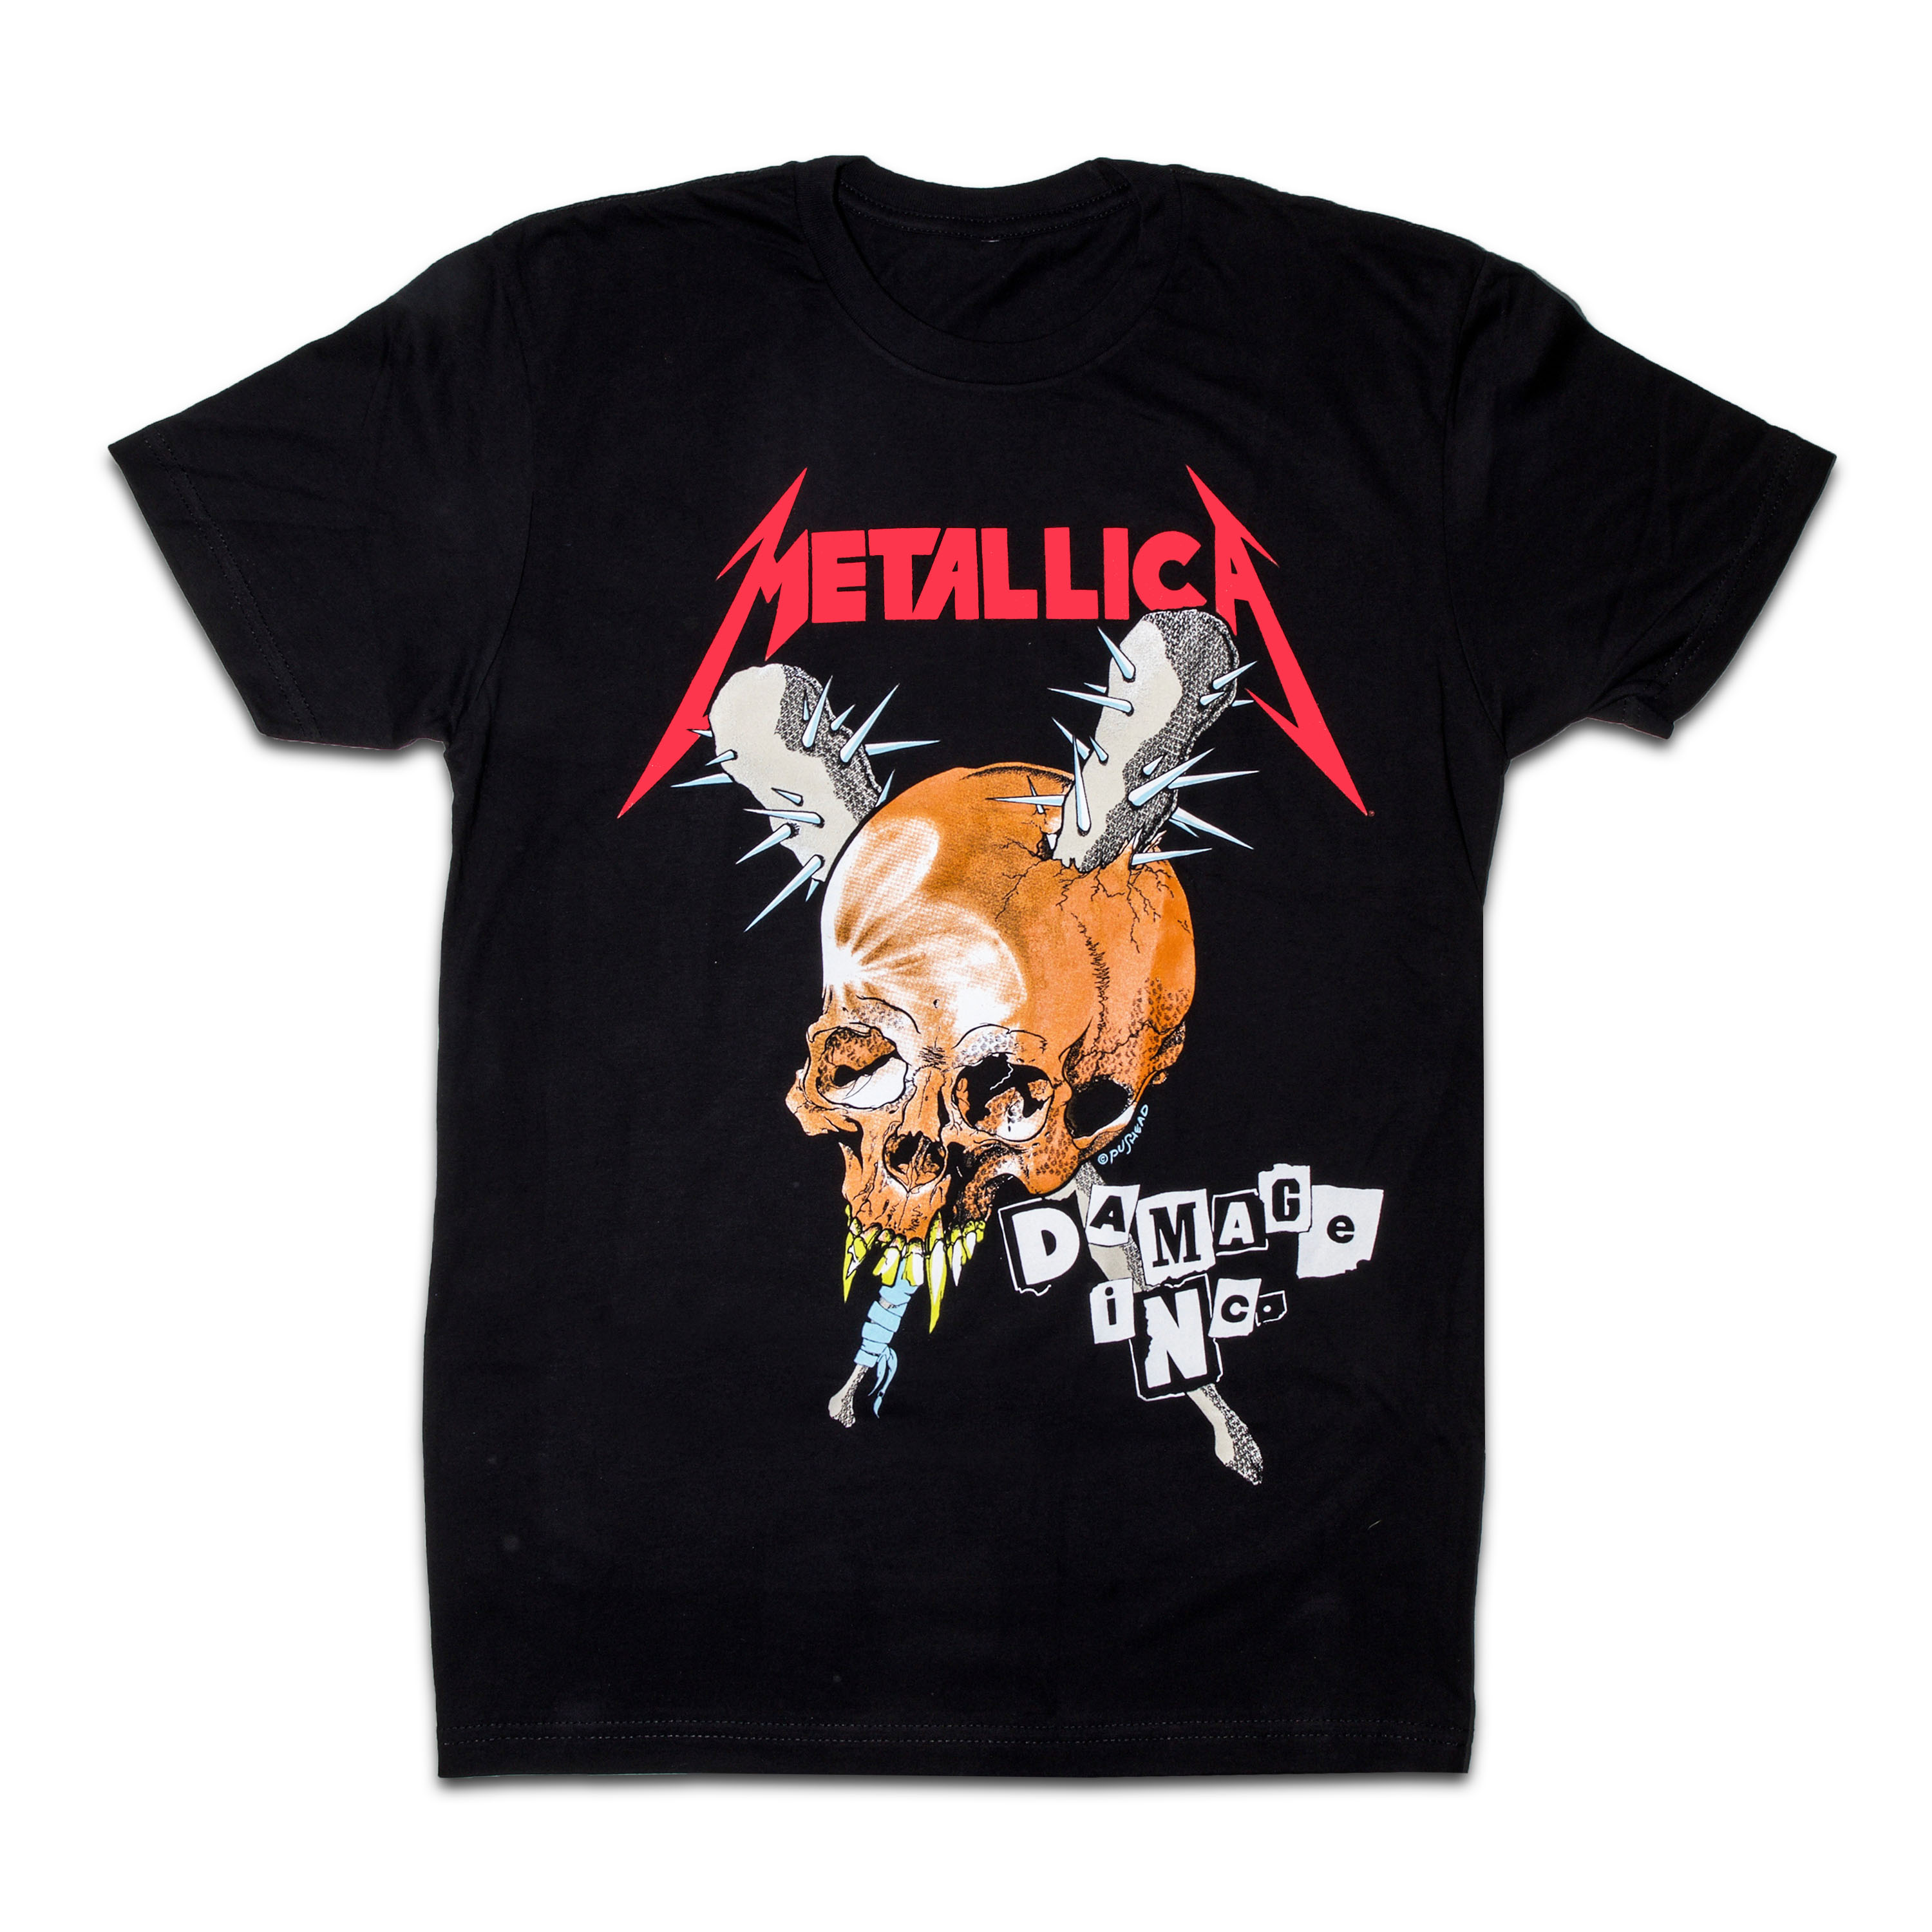 haar Ontoegankelijk overloop Damage, Inc. T-Shirt | Metallica.com | Metallica.com